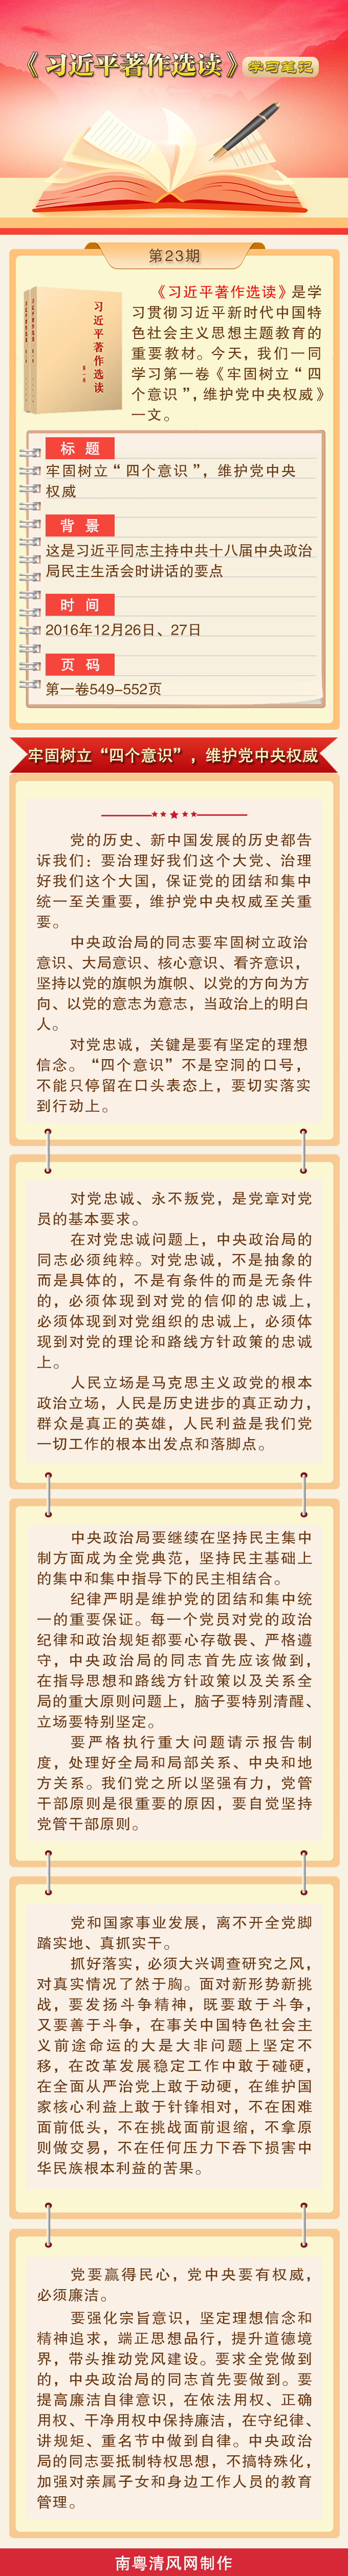 《习近平著作选读》学习笔记：牢固树立“四个意识”，维护党中央权威.png